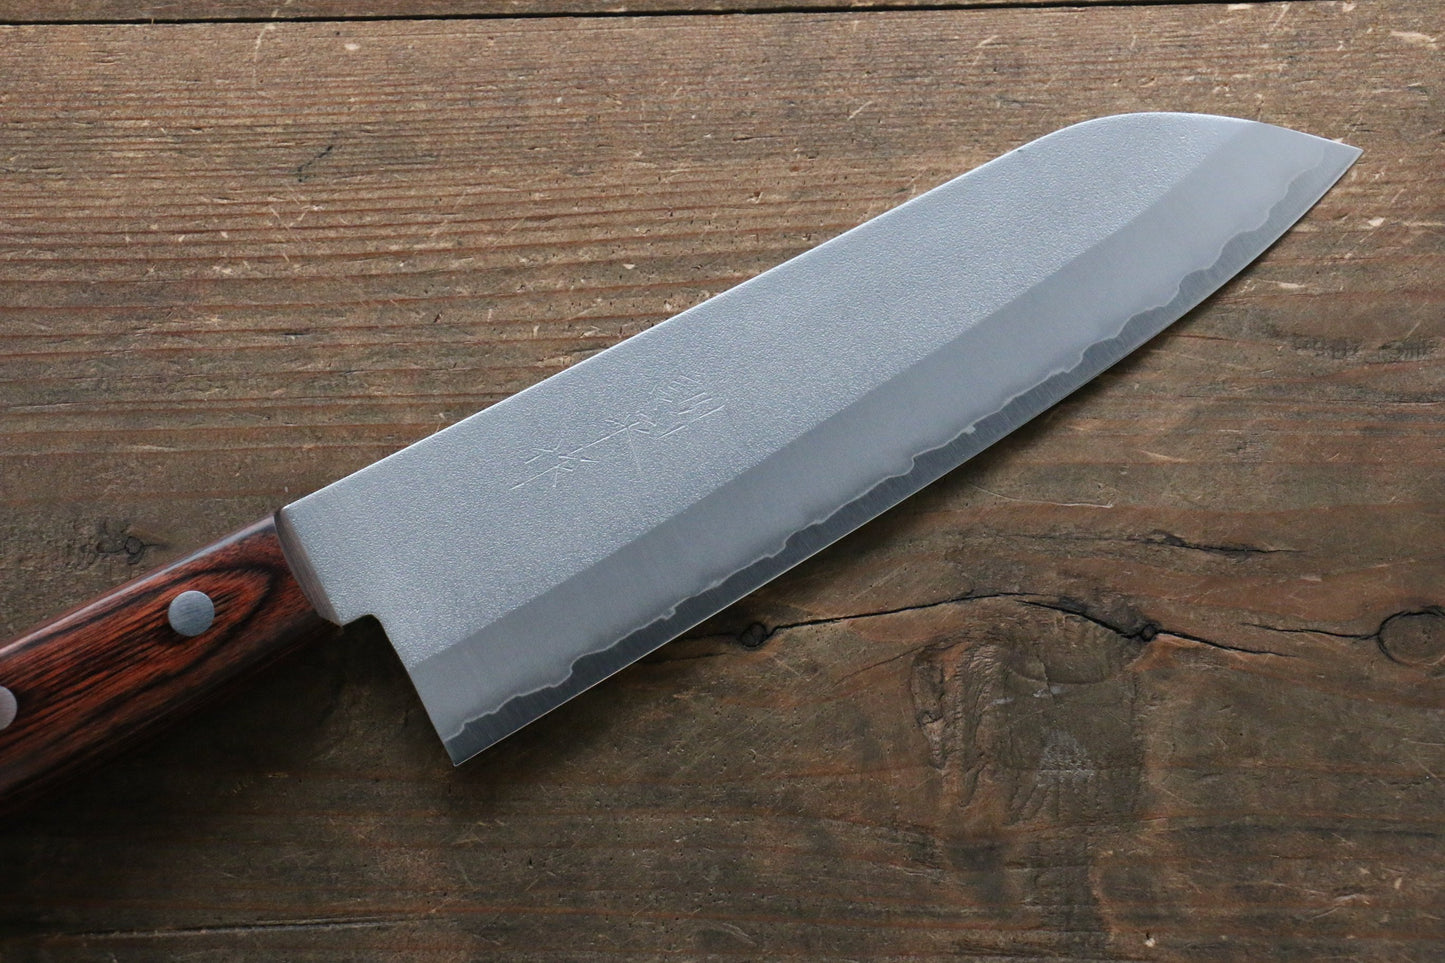 Kunihira VG1 Nashiji Santoku Japanese Knife 170mm with Mahogany Handle - Japanny - Best Japanese Knife